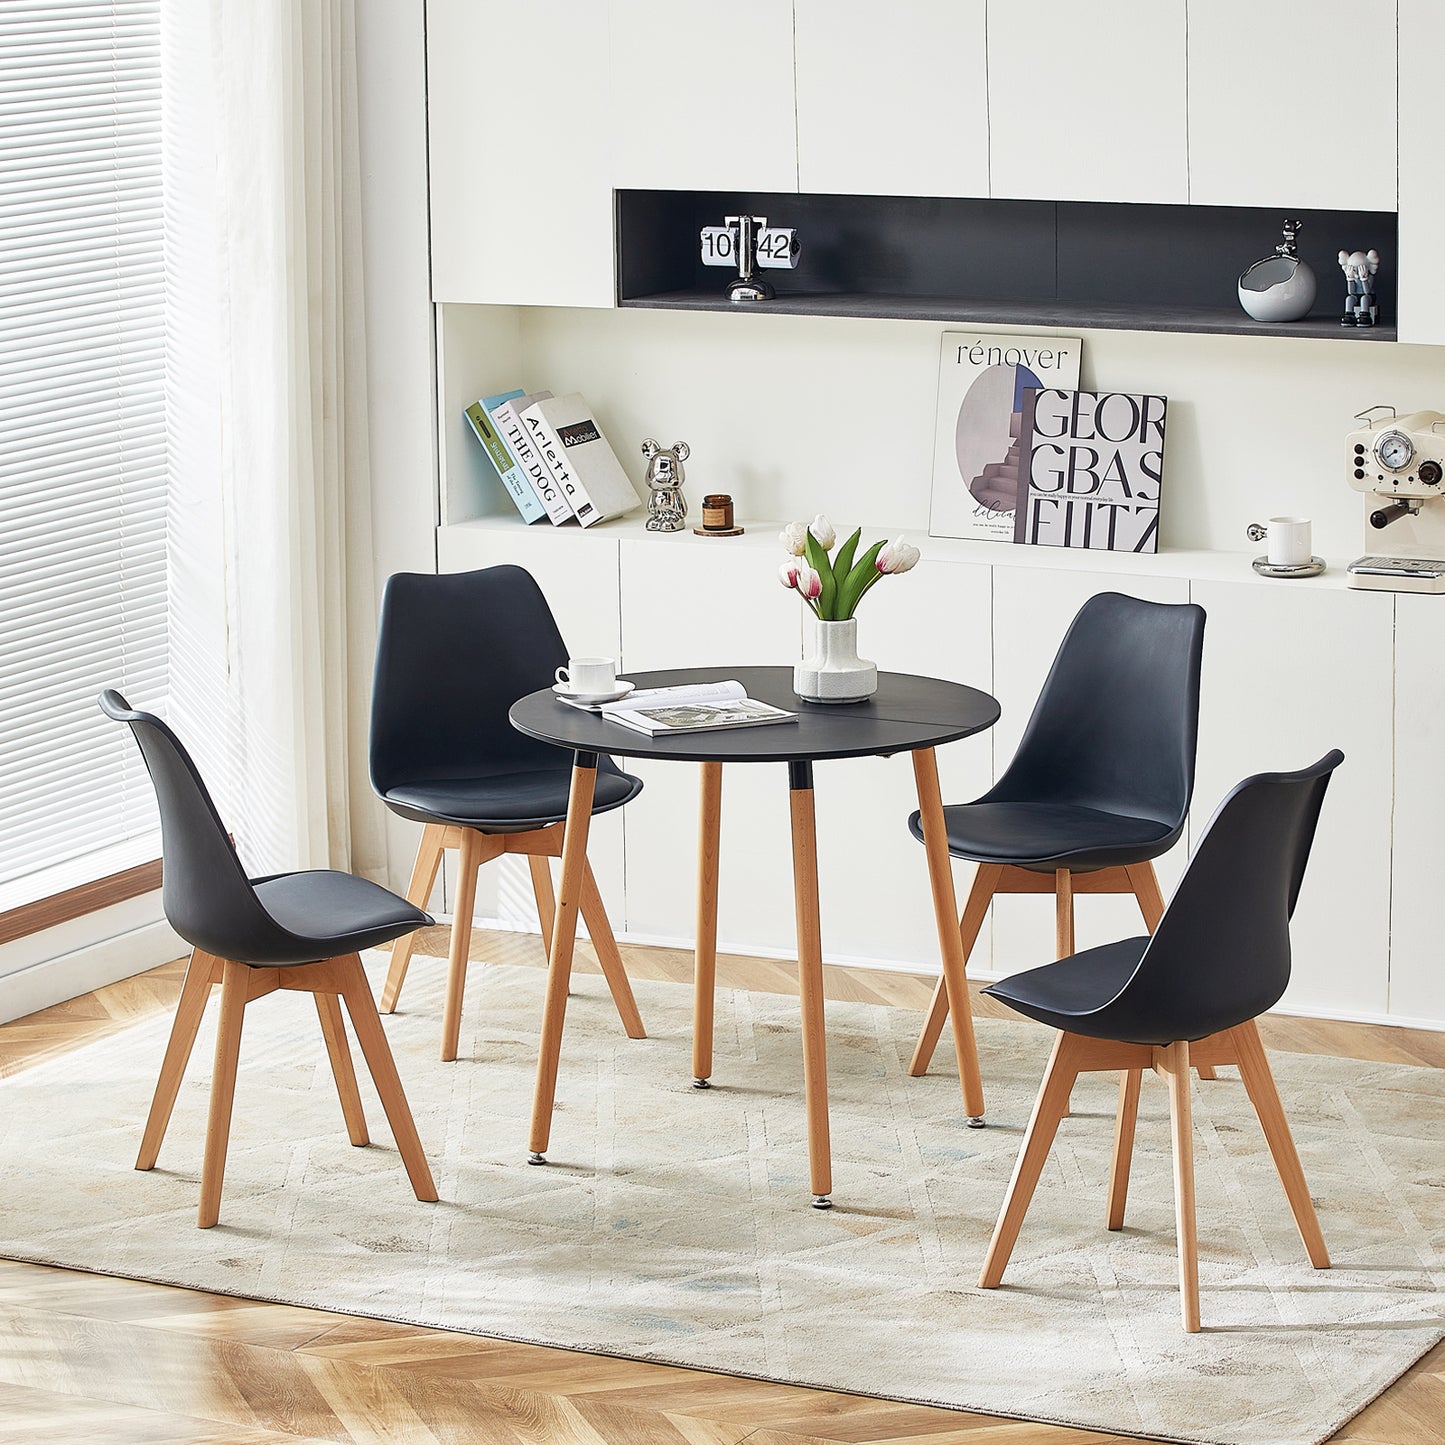 Ensemble table et chaises - Table Ronde de Cuisine avec Pieds en Bois et 4 Chaises Scandinaves Noires, Dimensions 54*54*82cm